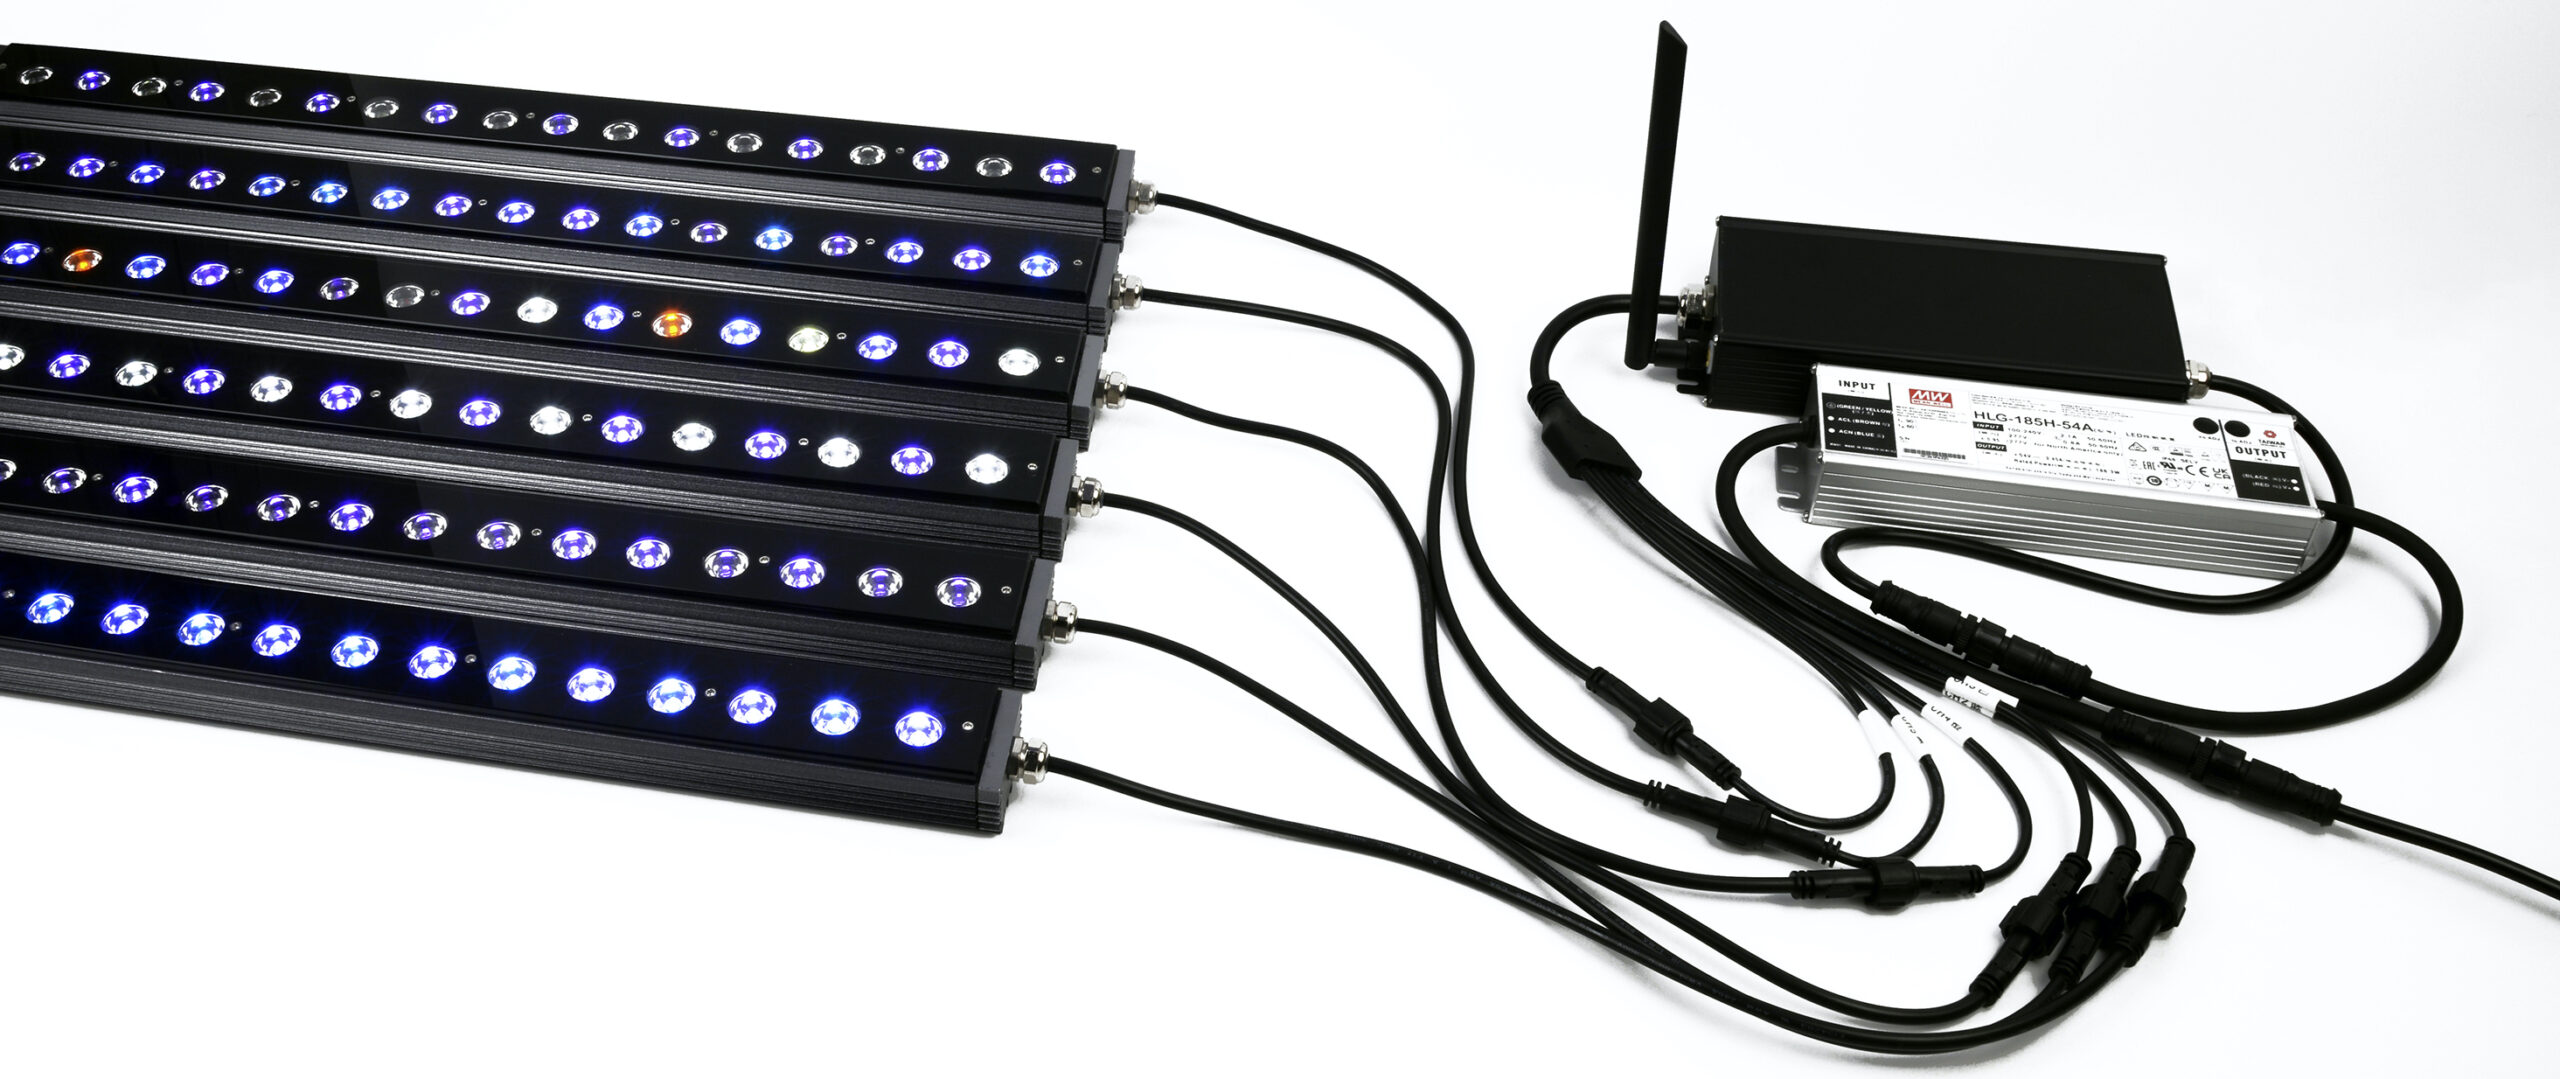 Orphek Osix - Controlador de barra LED arrecife Or3